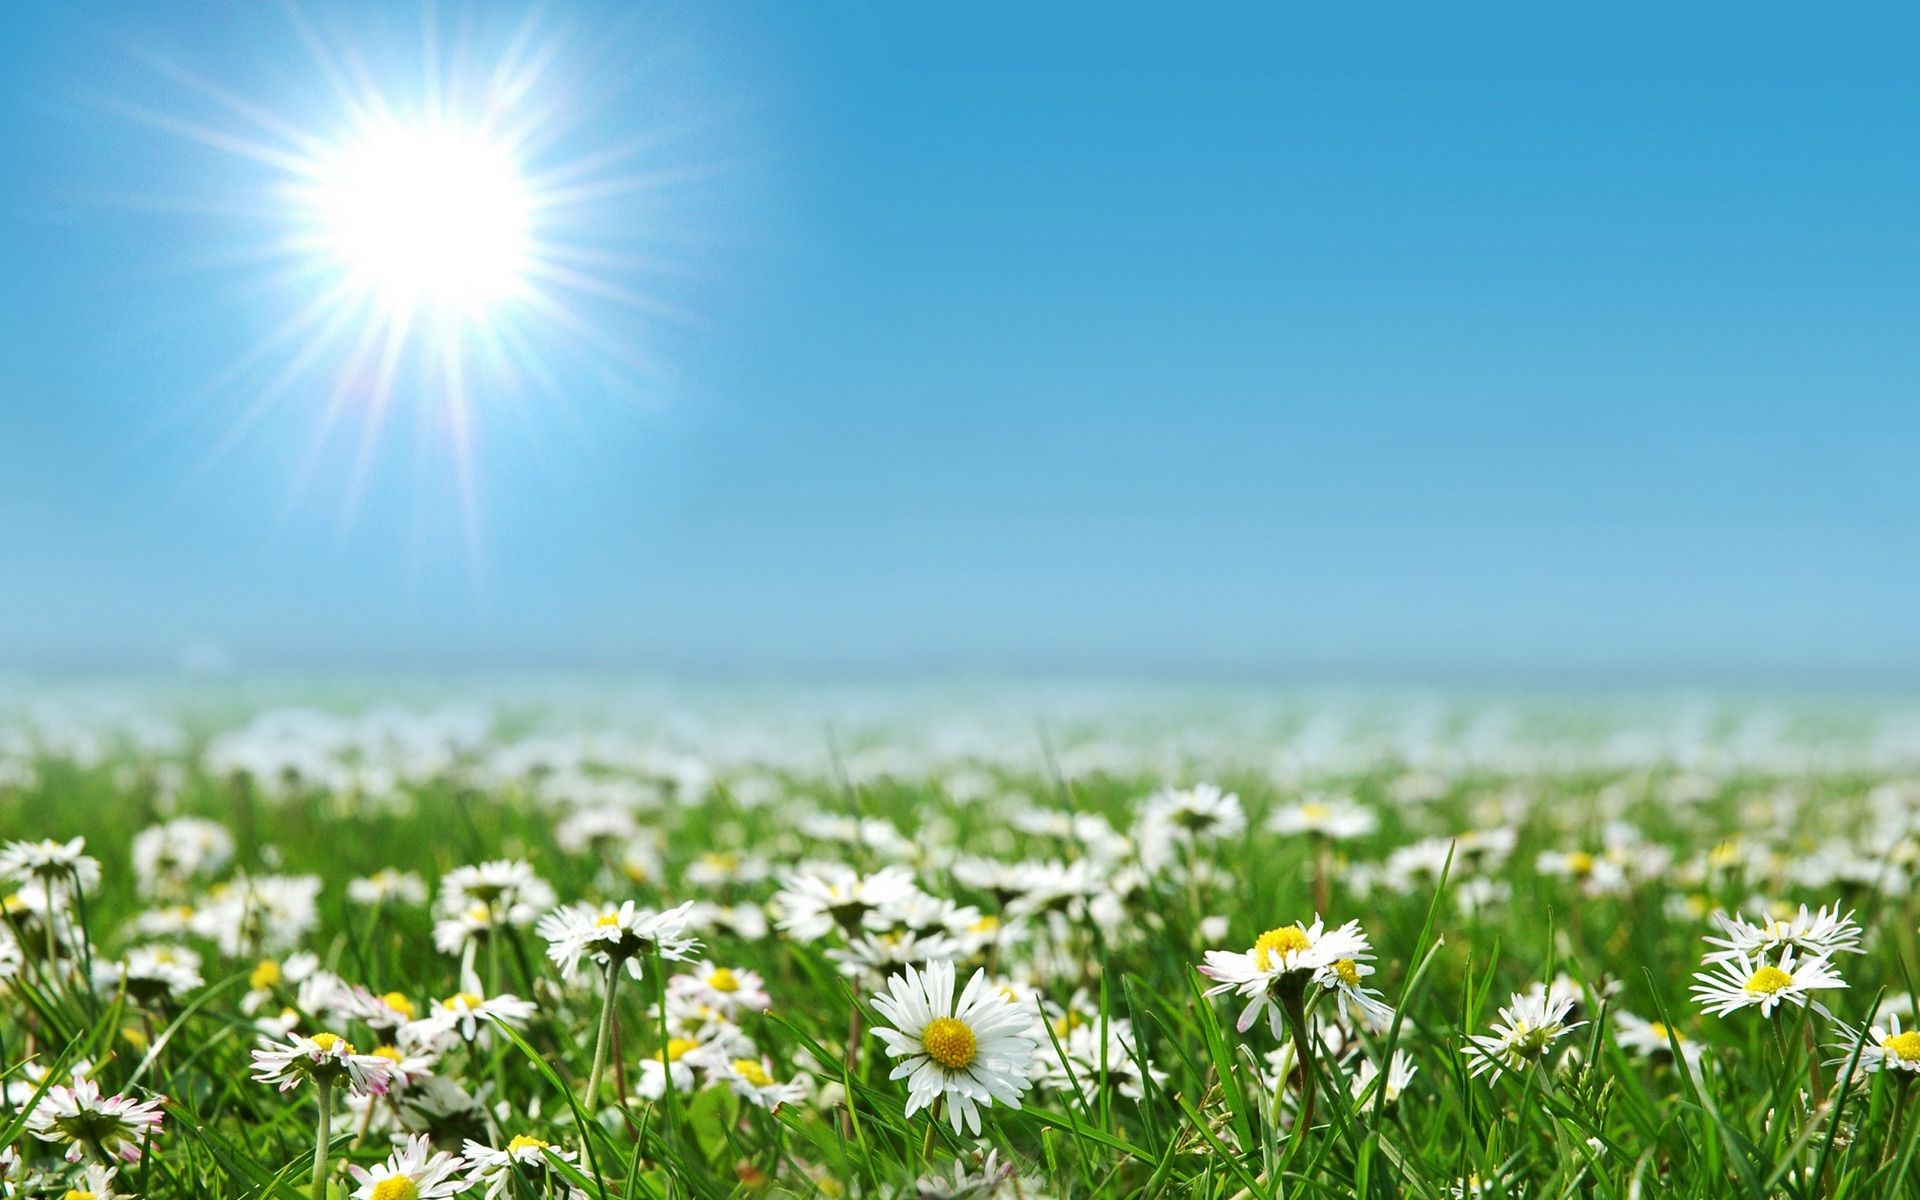 ромашки солнце лето природа трава сельских хорошую погоду поле рост яркий цветок пастбище сенокос сельской местности лист флора на открытом воздухе идиллия рассвет